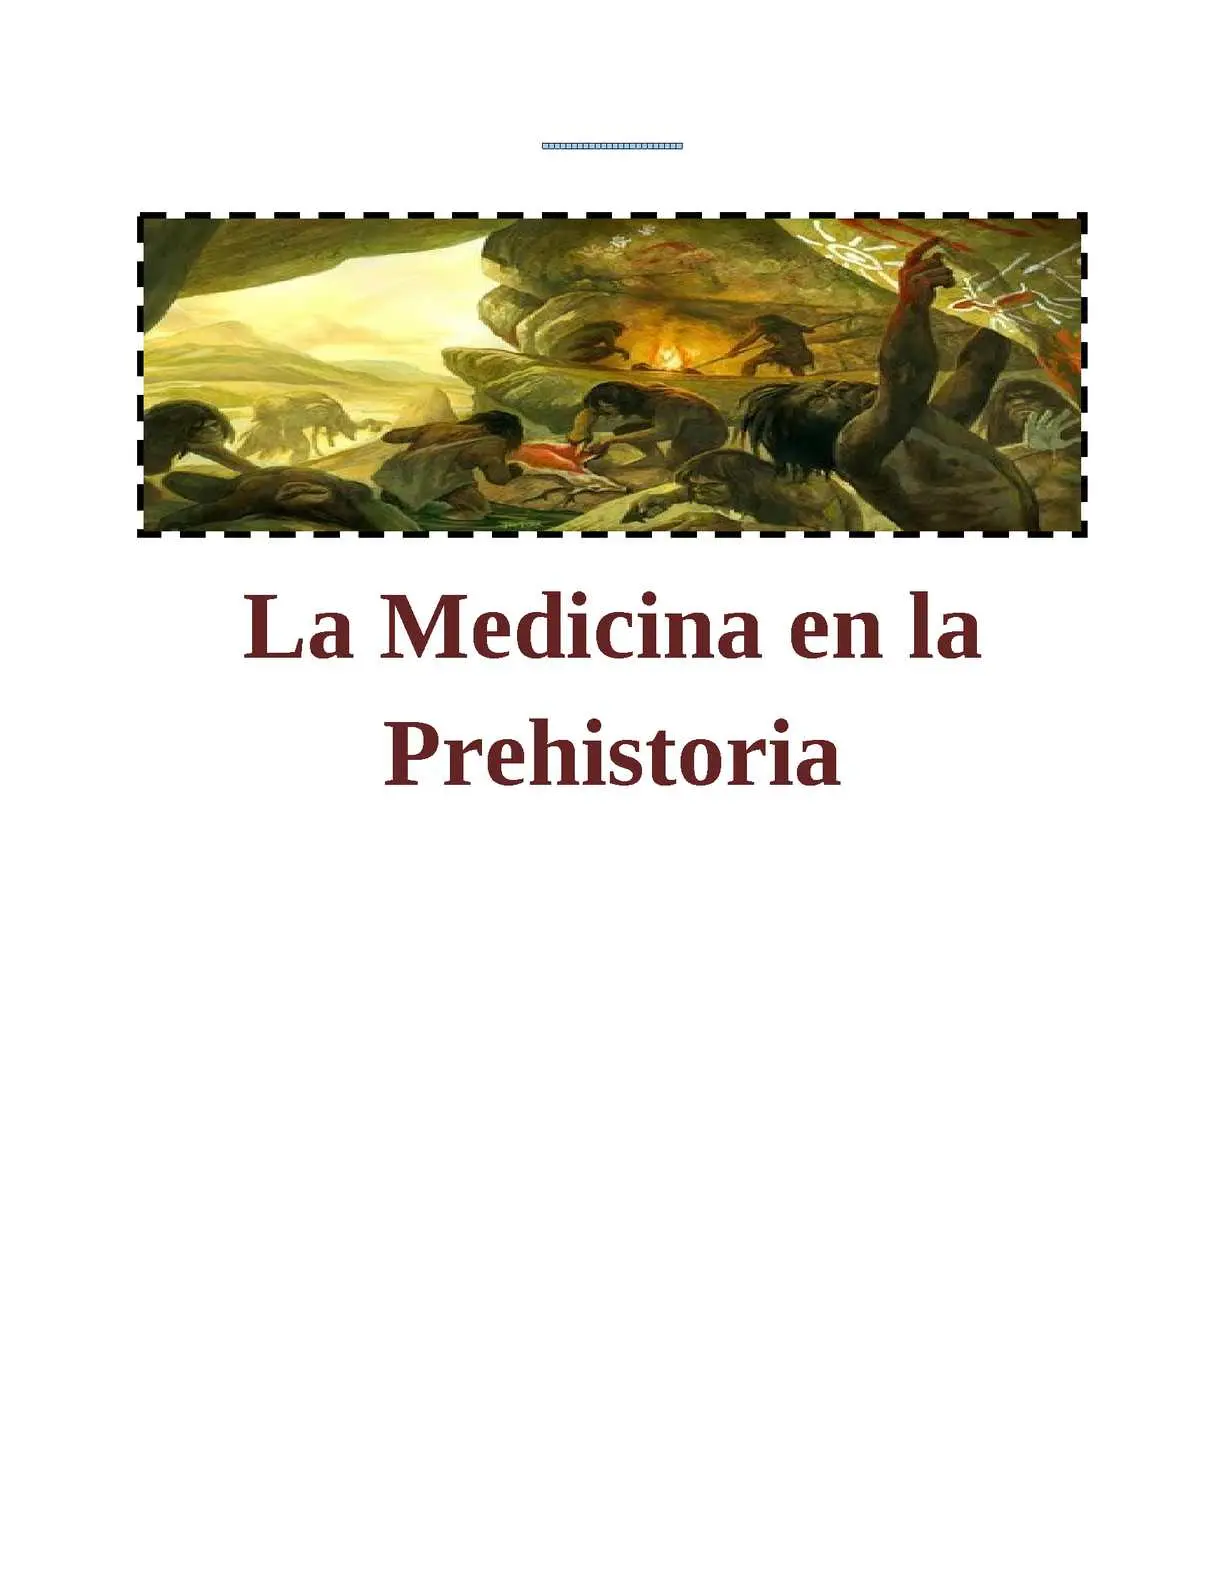 la medicina en la prehistoria resumen - Cuáles son los 3 tipos de medicina que surgieron en la prehistoria